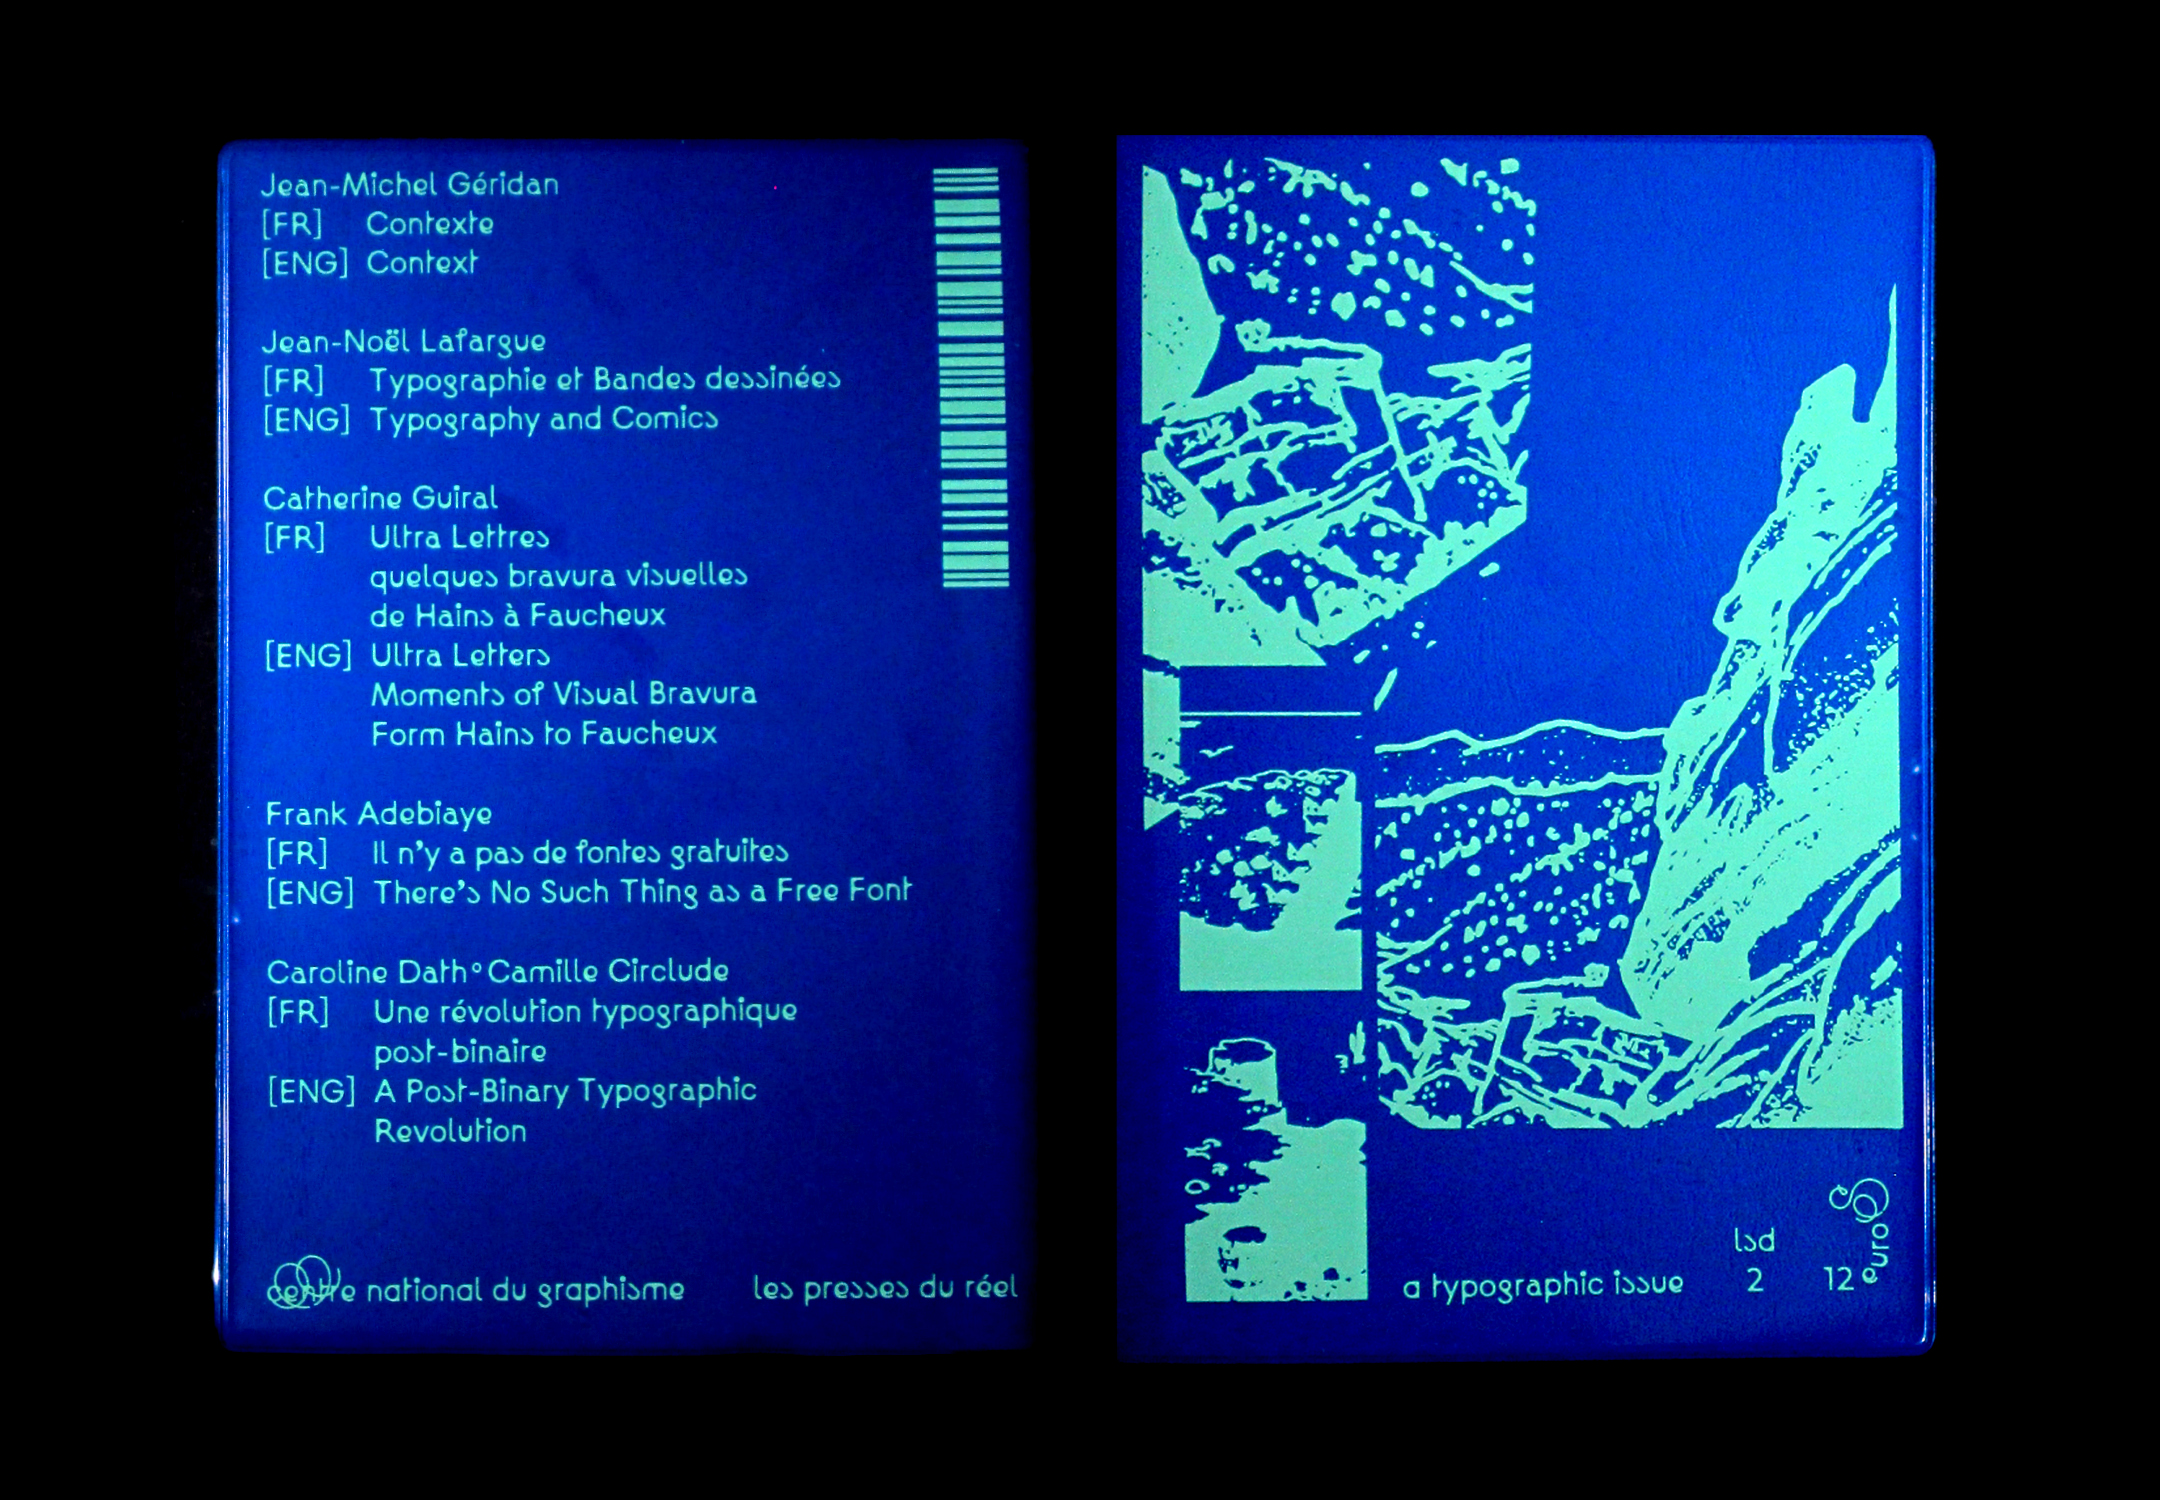 Couverture et quatrième de couverture de la revue. La quatrième de couverture fait office de sommaire. Les tons sont bleus.